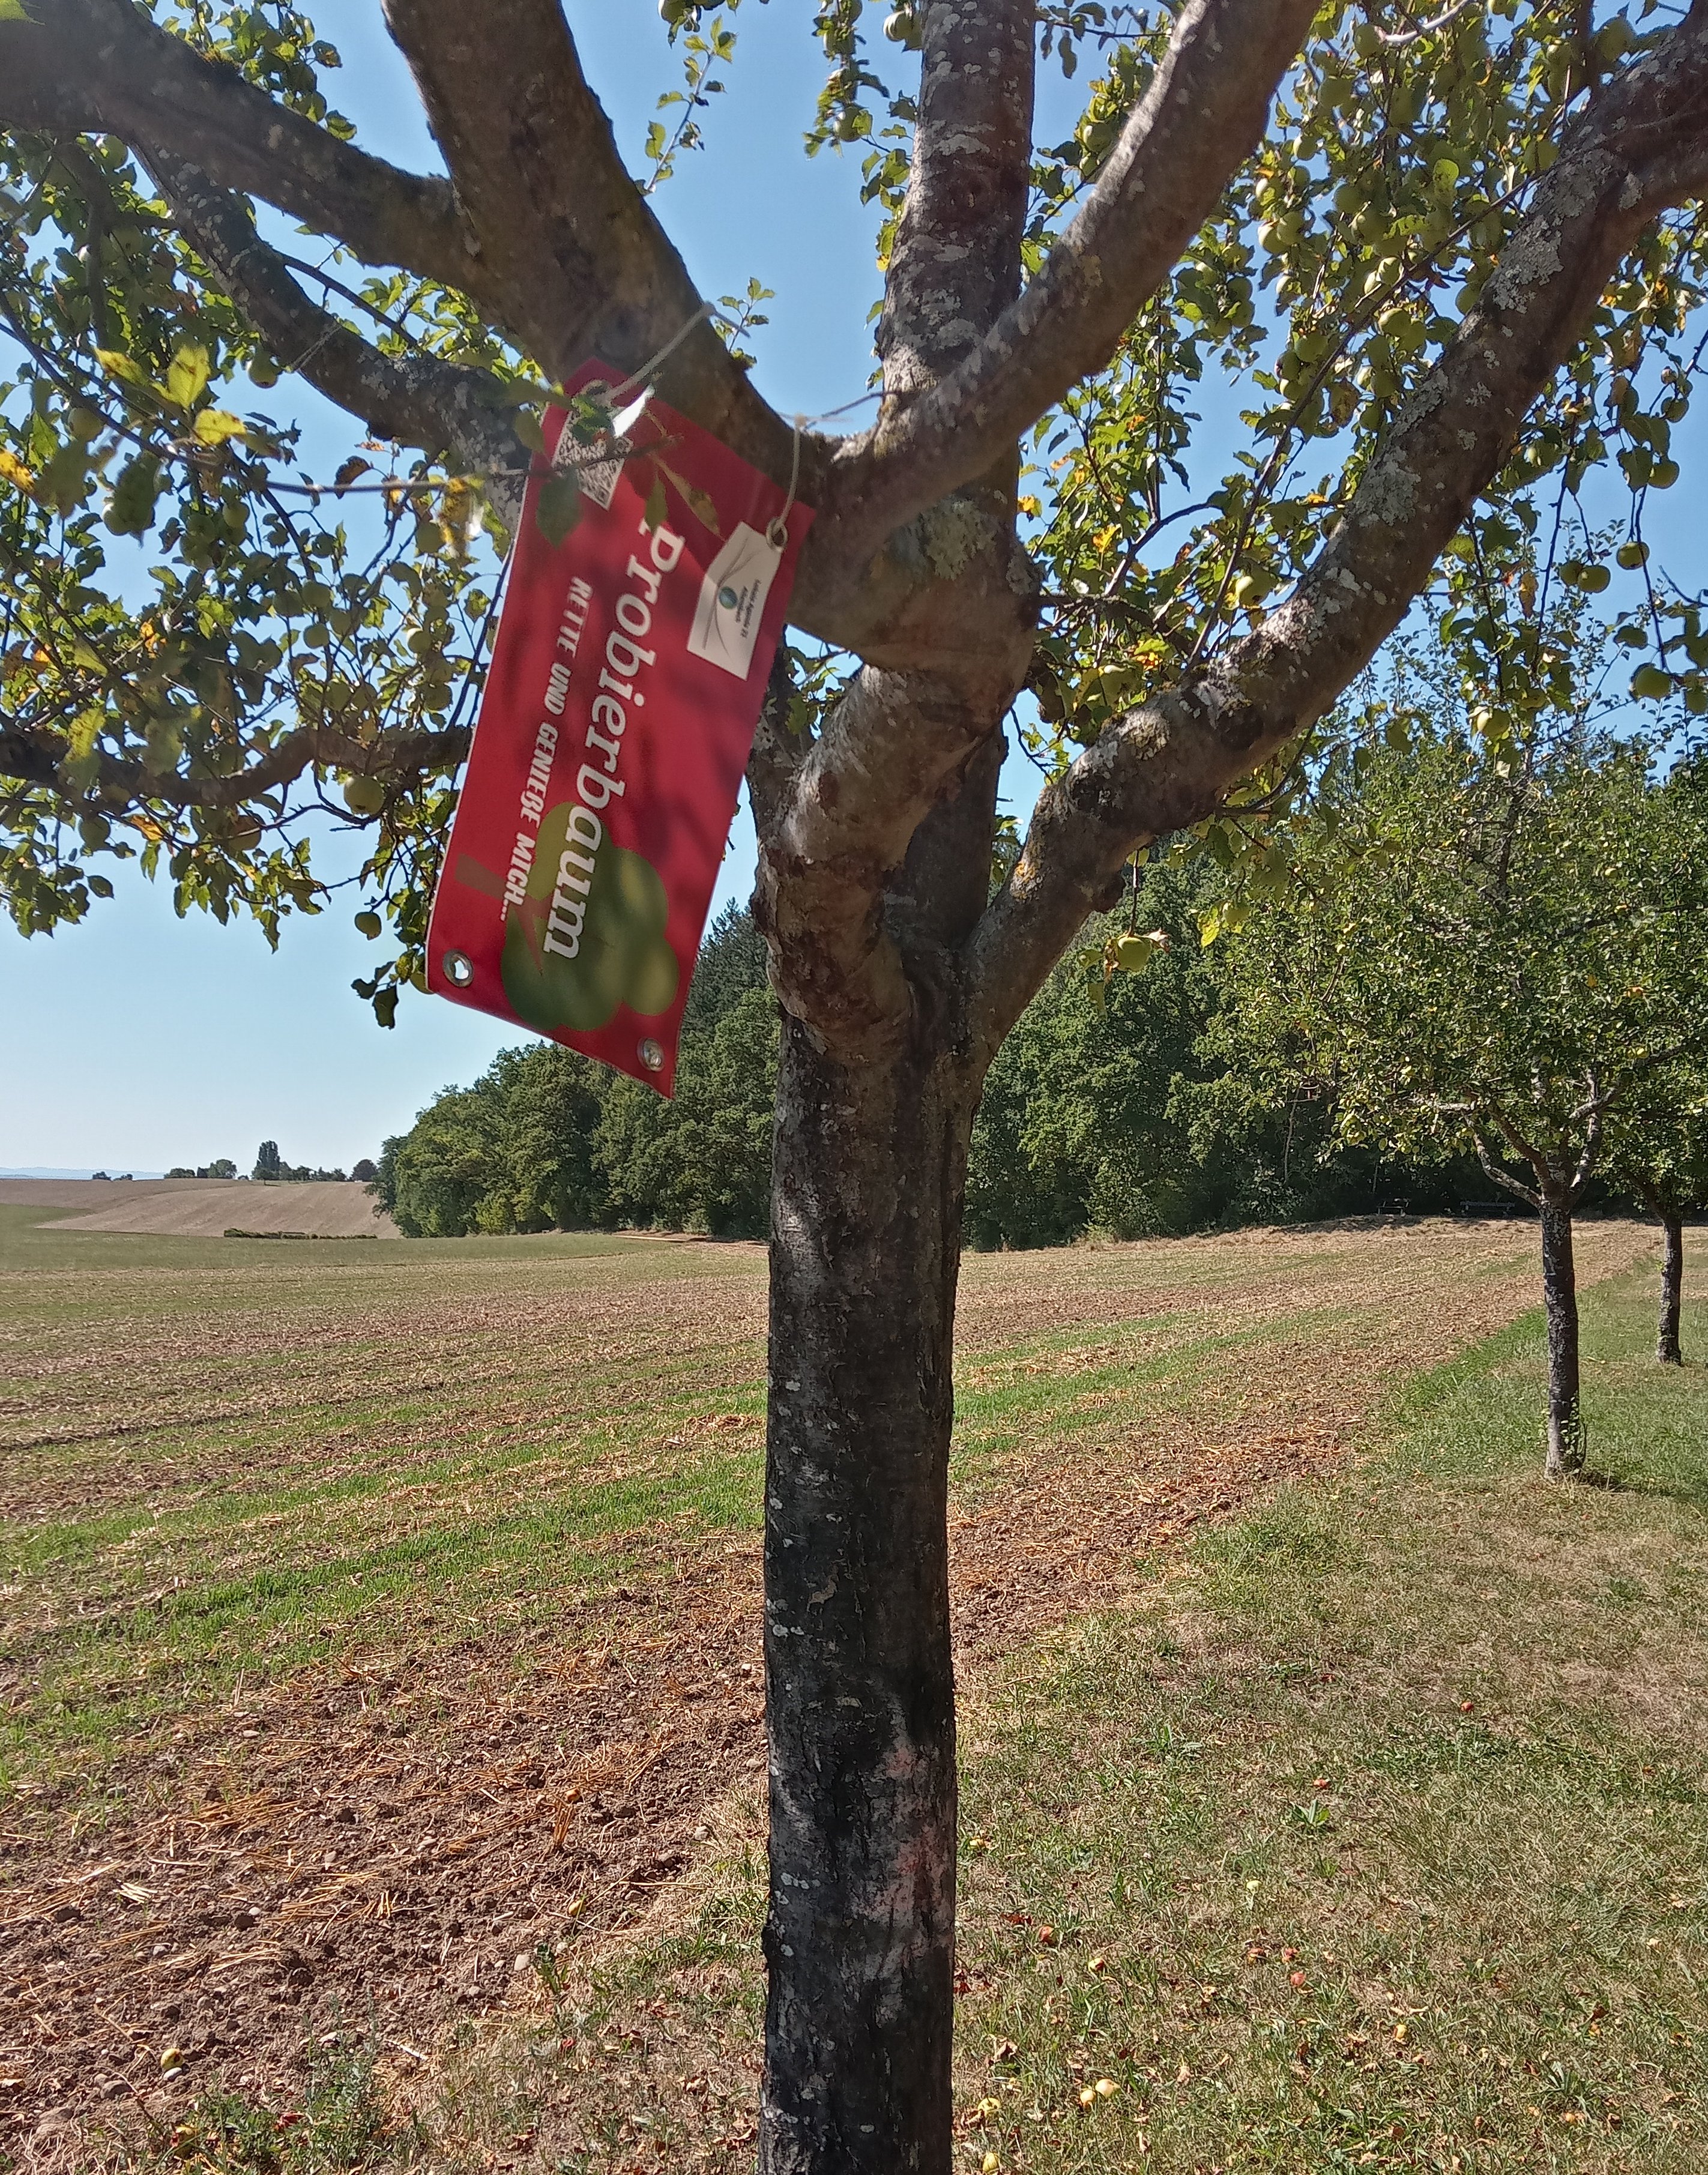  Probierbaum-Schild an Baum hängend - Foto: Lokale Agenda 21 